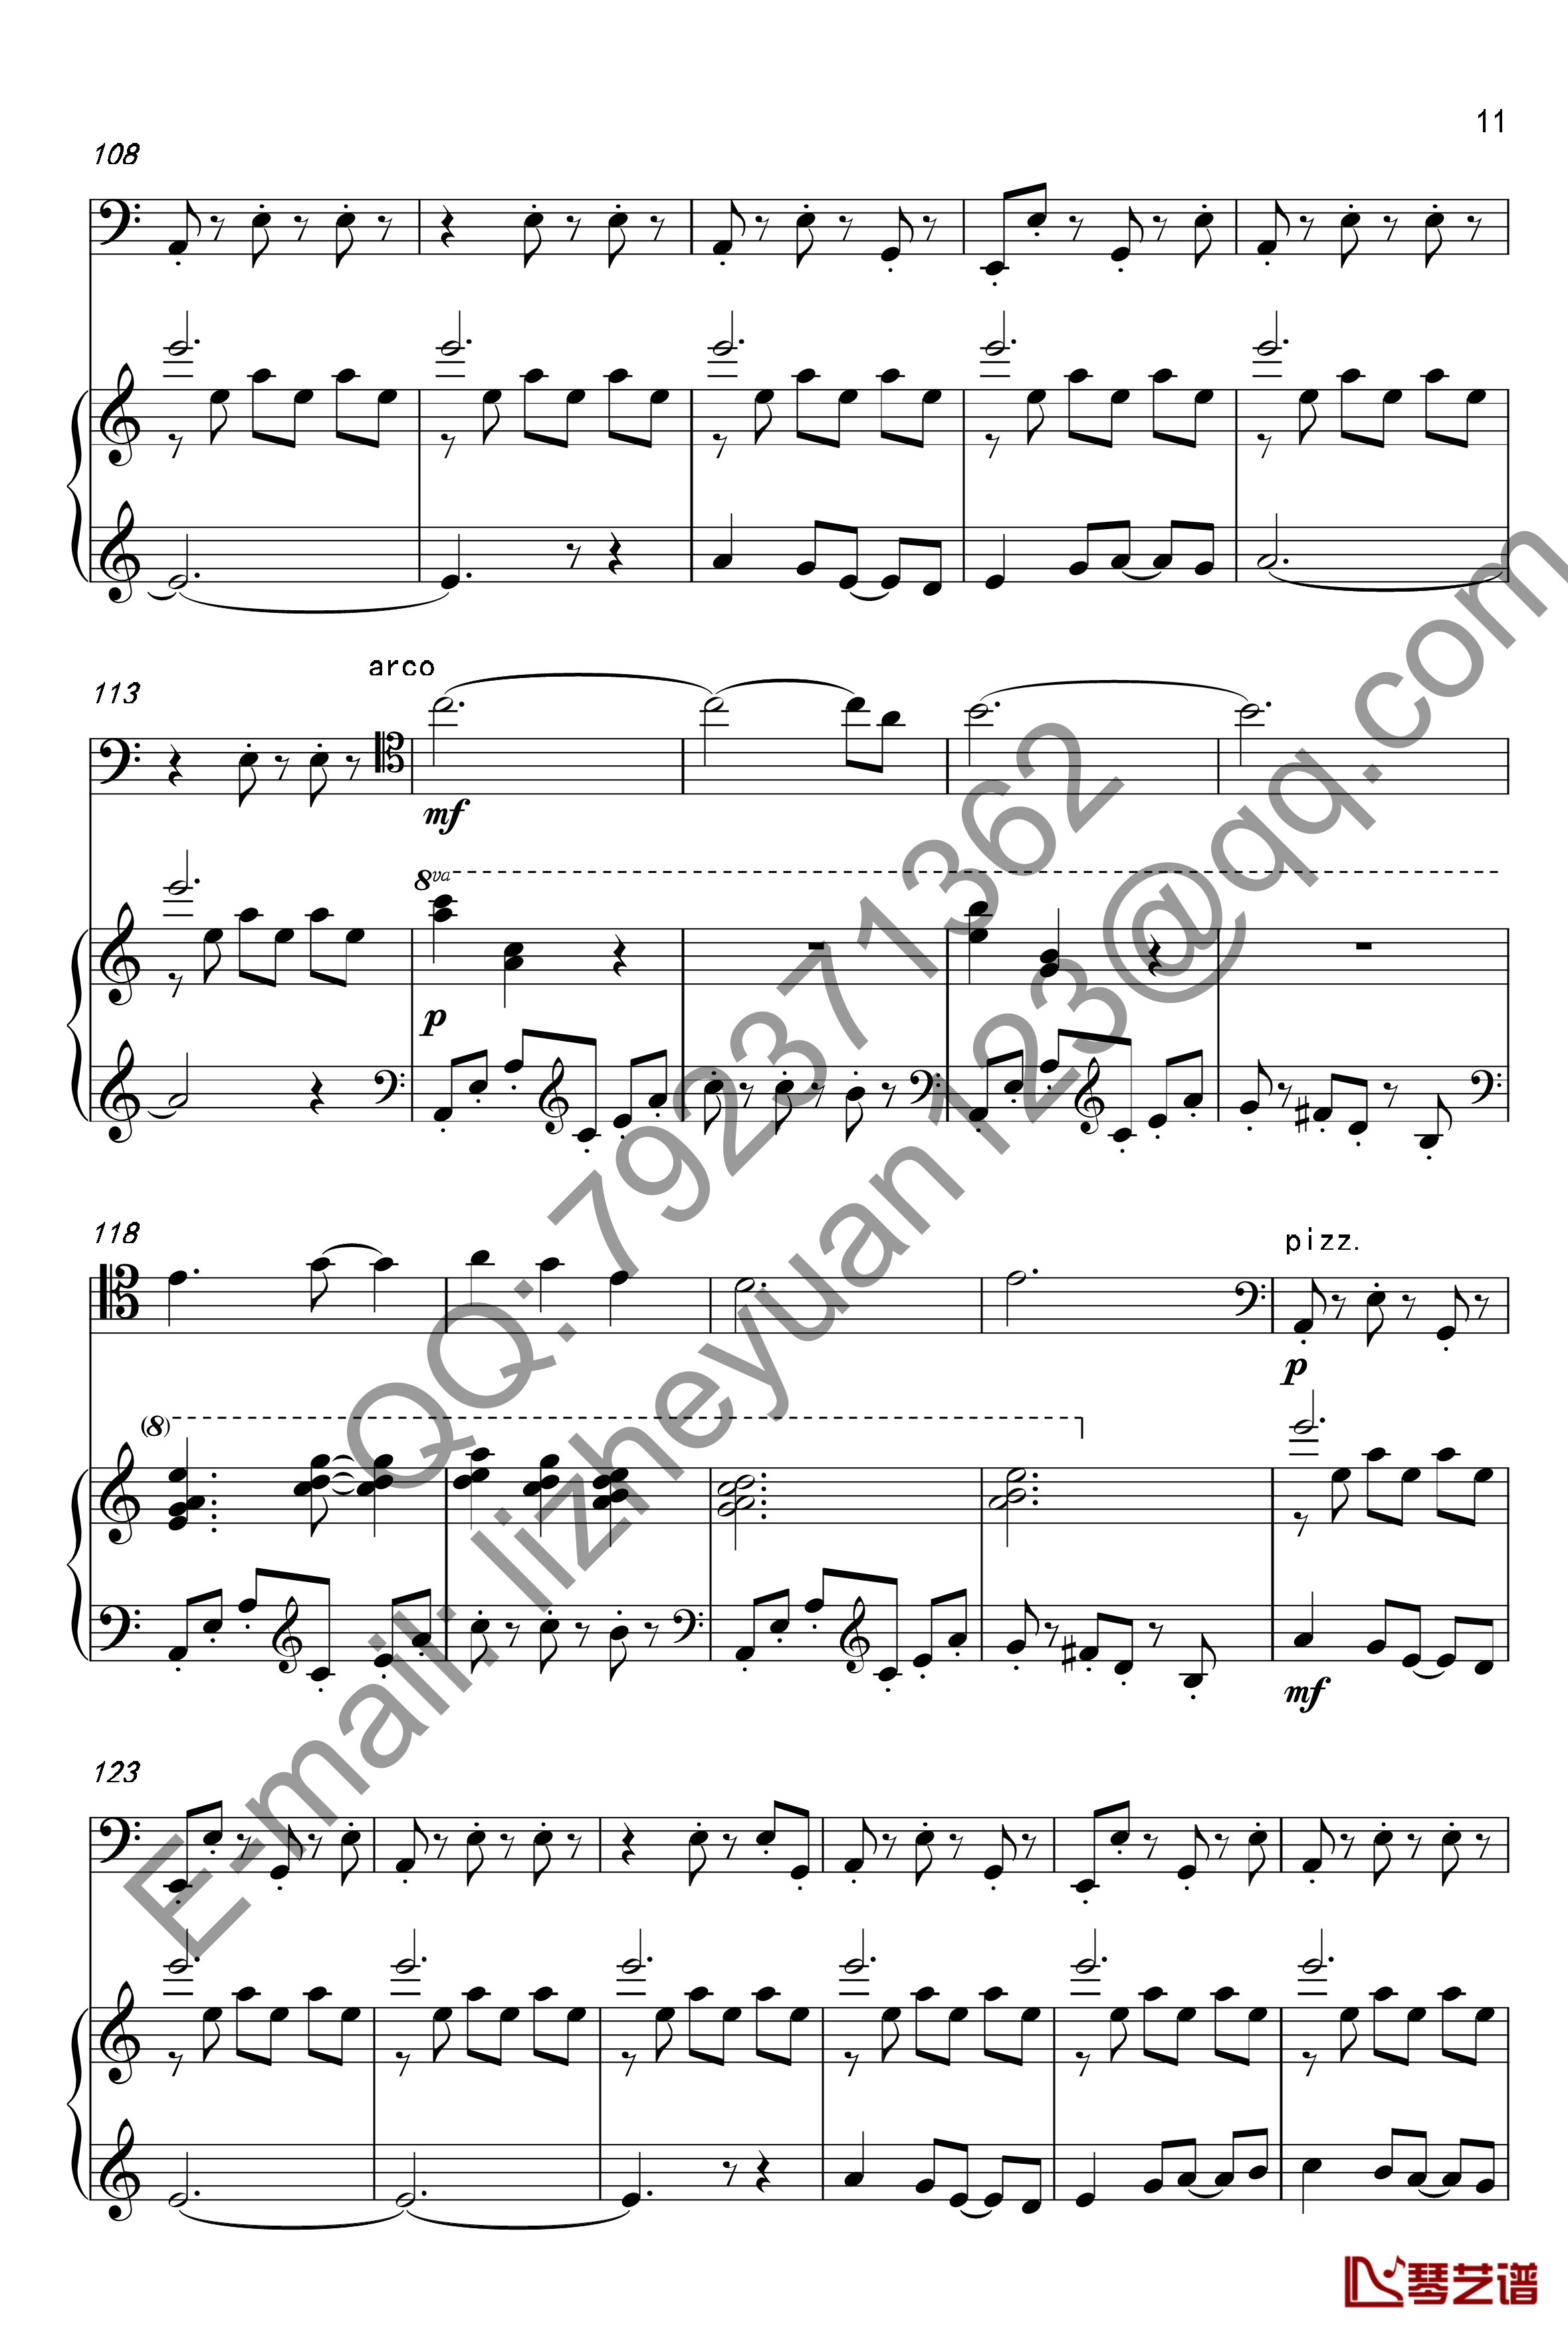 唐顿庄园主题曲钢琴谱-钢琴+大提琴-唐顿庄园11